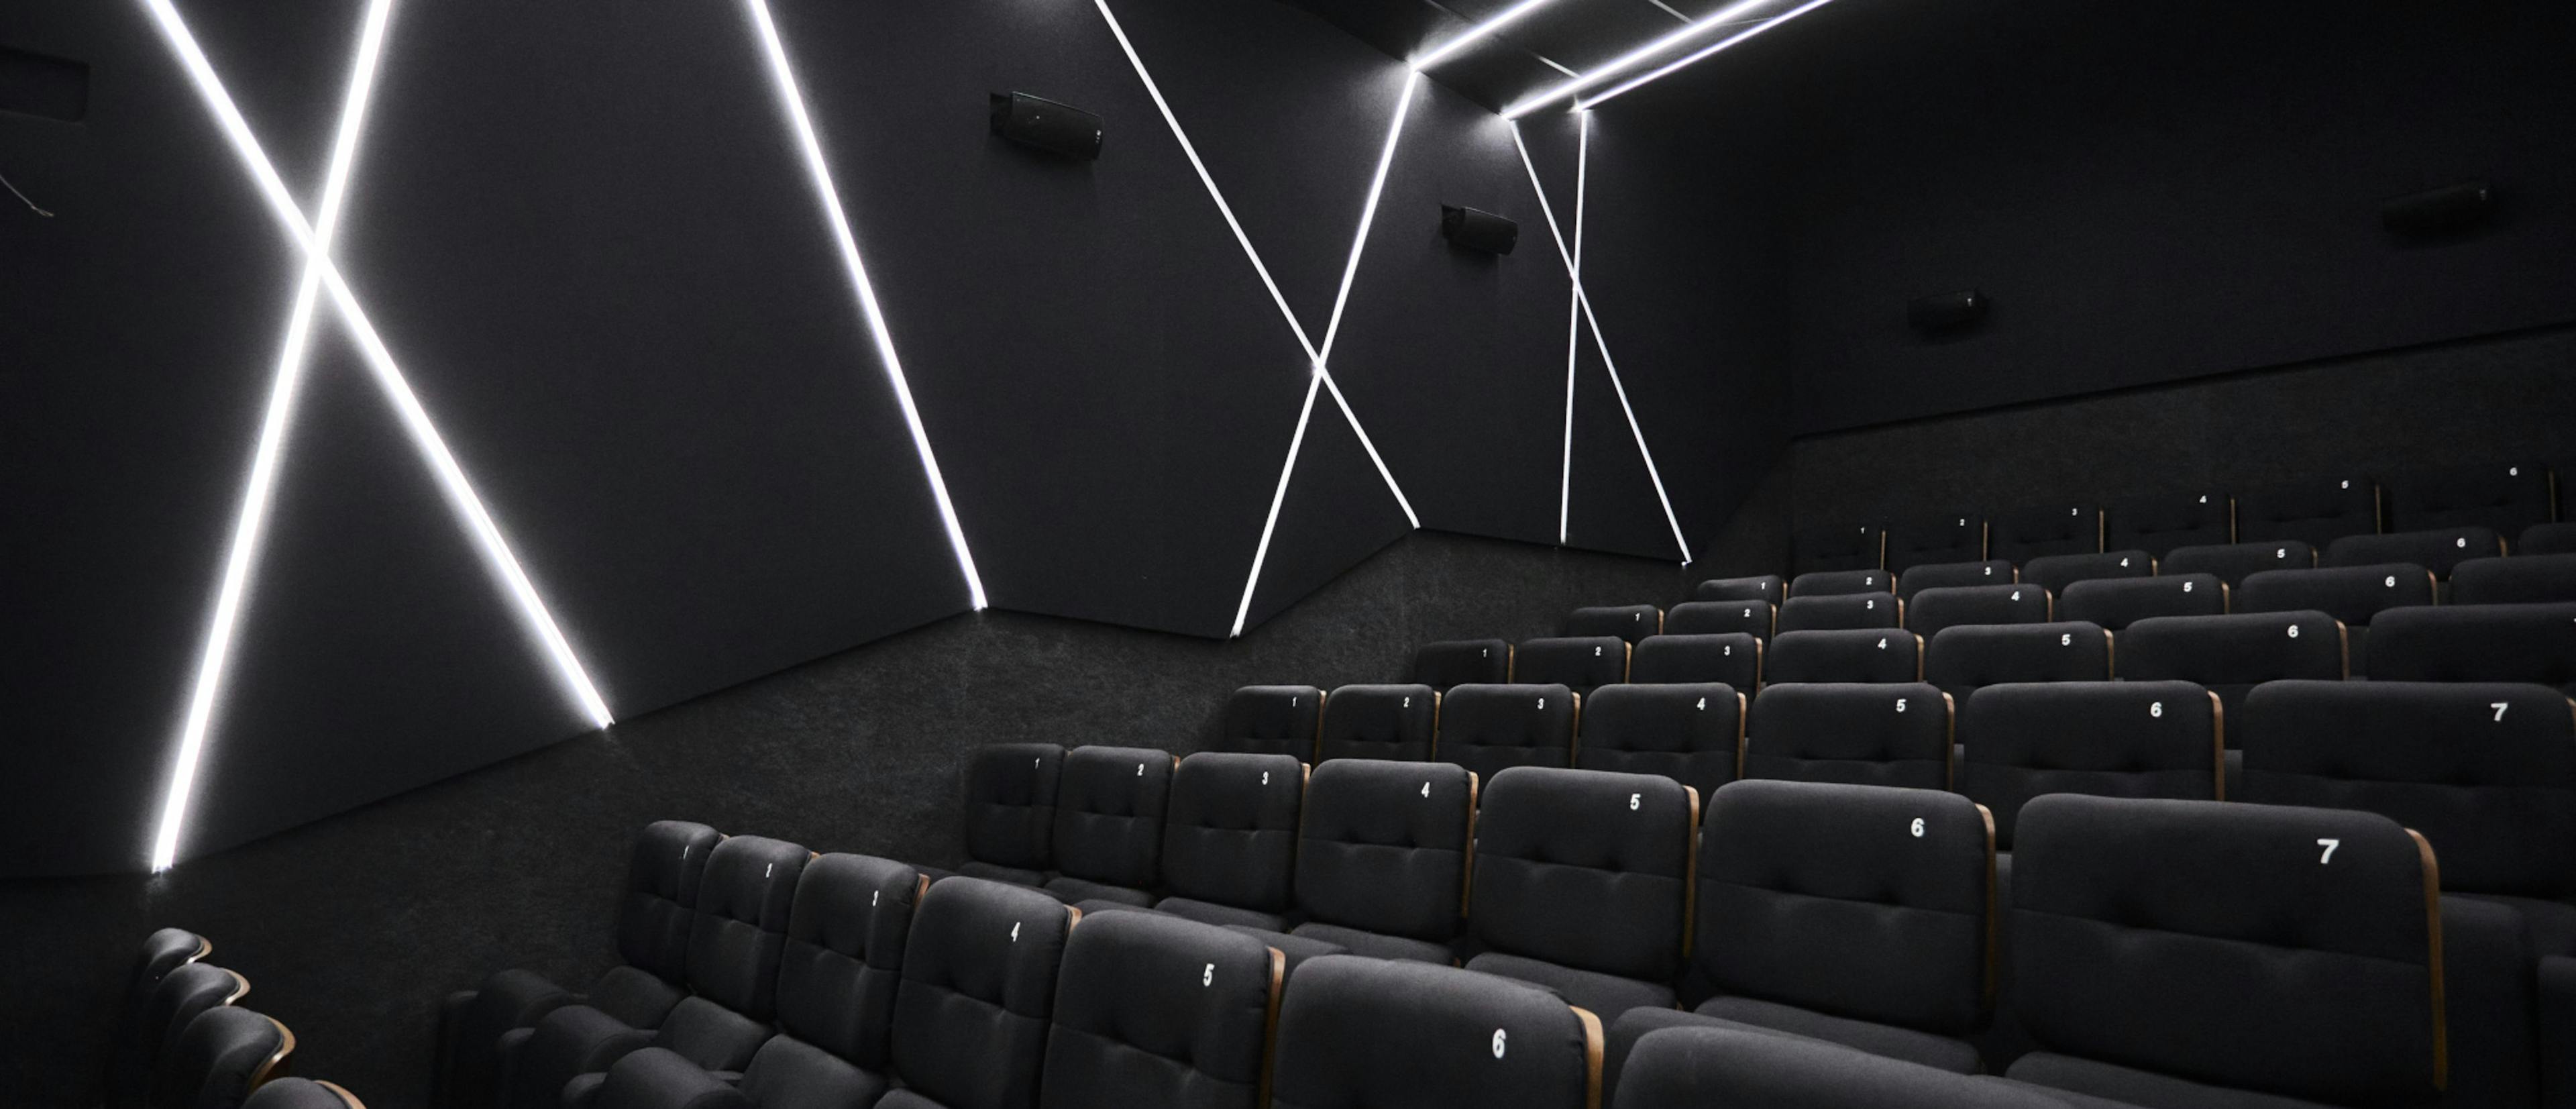 Una de las salas de los Cines Embajadores Foncalada preparada para recibir a los espectadores en Oviedo